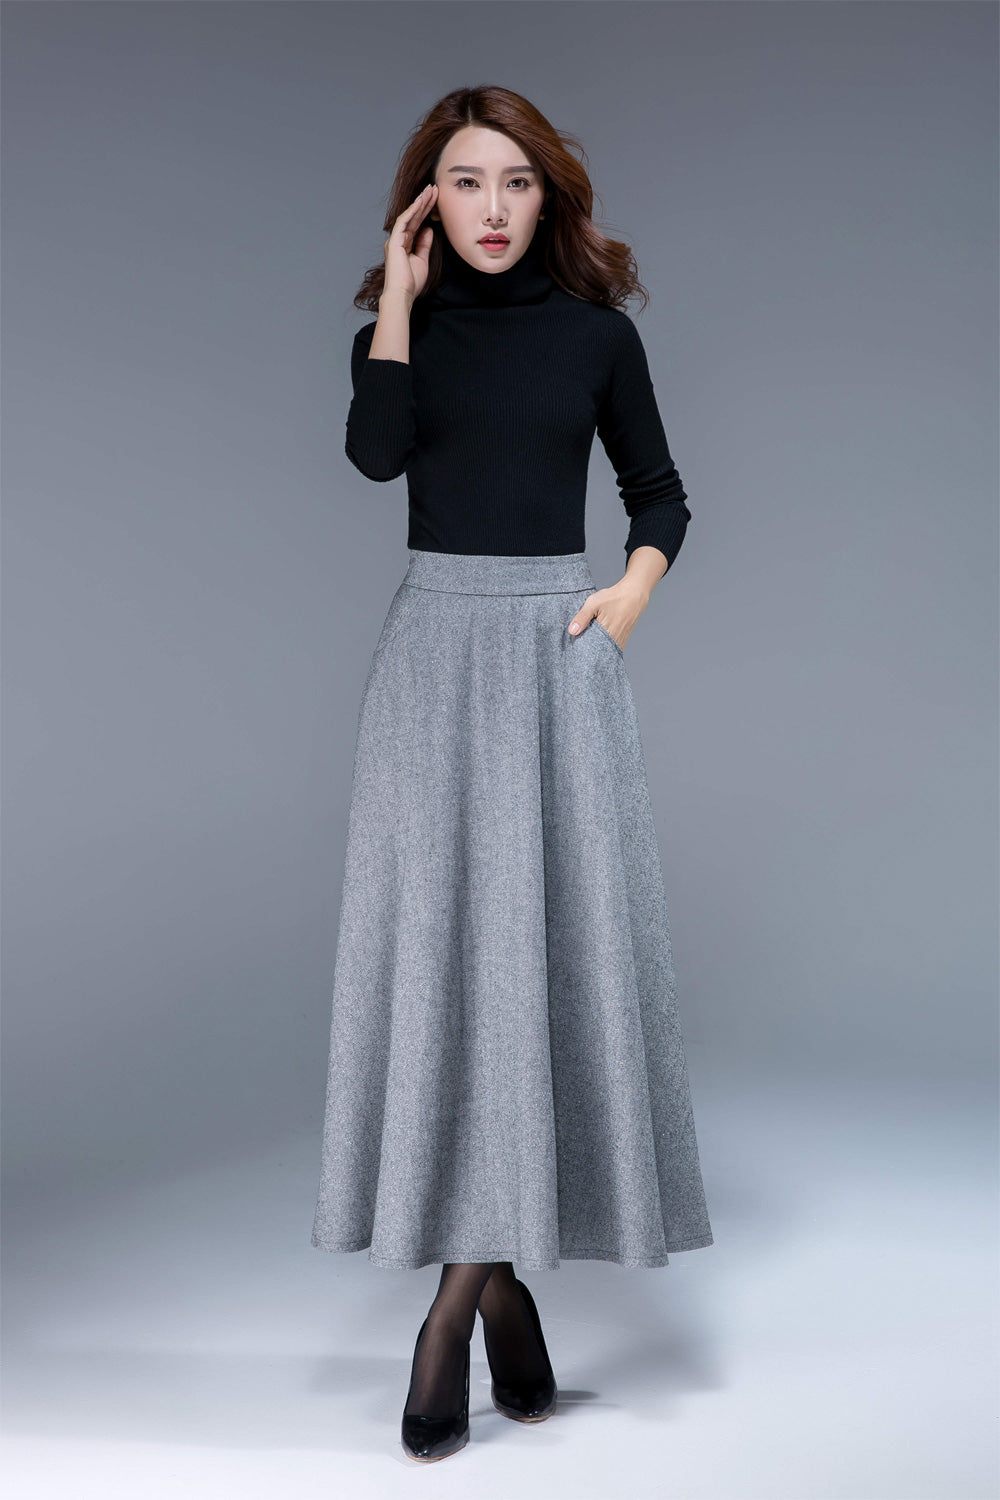 gray wool skirt, a line skirt, classic skirt, elegant skirt, skirt